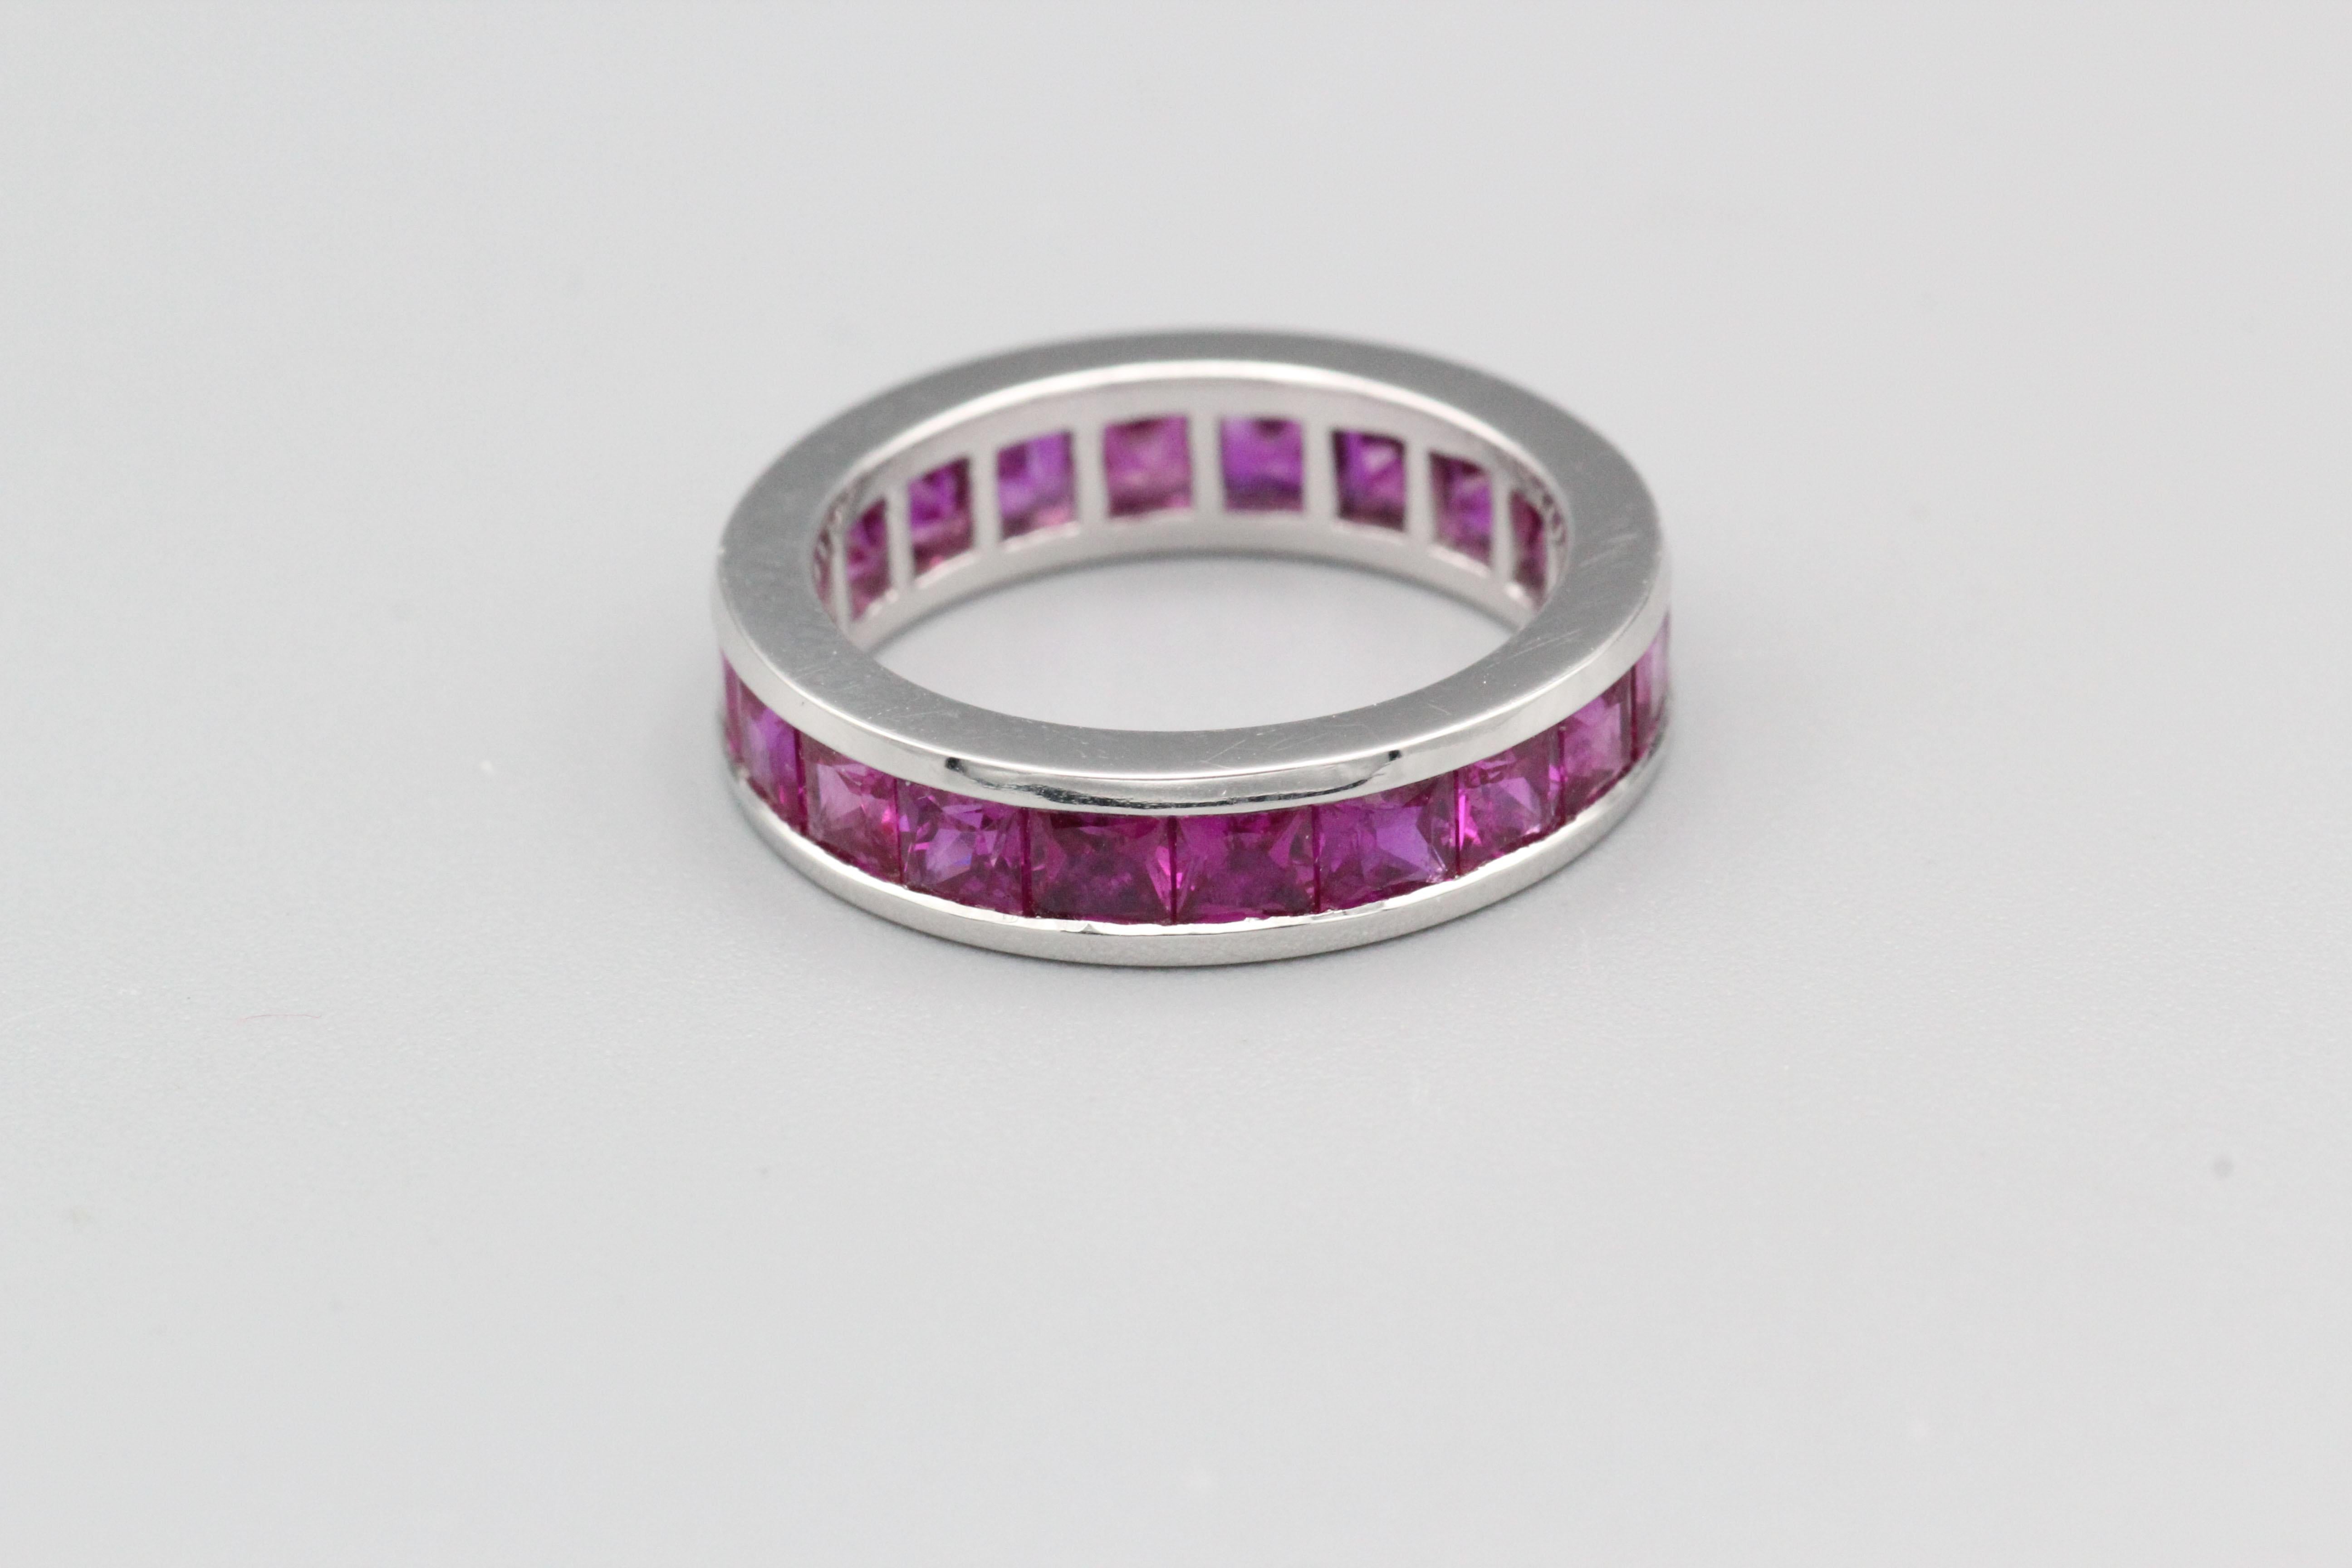 Très beau bracelet en platine et rubis taille princesse de Graff.  Le bracelet est fabriqué en platine de haute qualité, un métal durable et précieux connu pour sa solidité, sa pureté et son éclat.  L'anneau est serti d'une rangée de rubis de forme